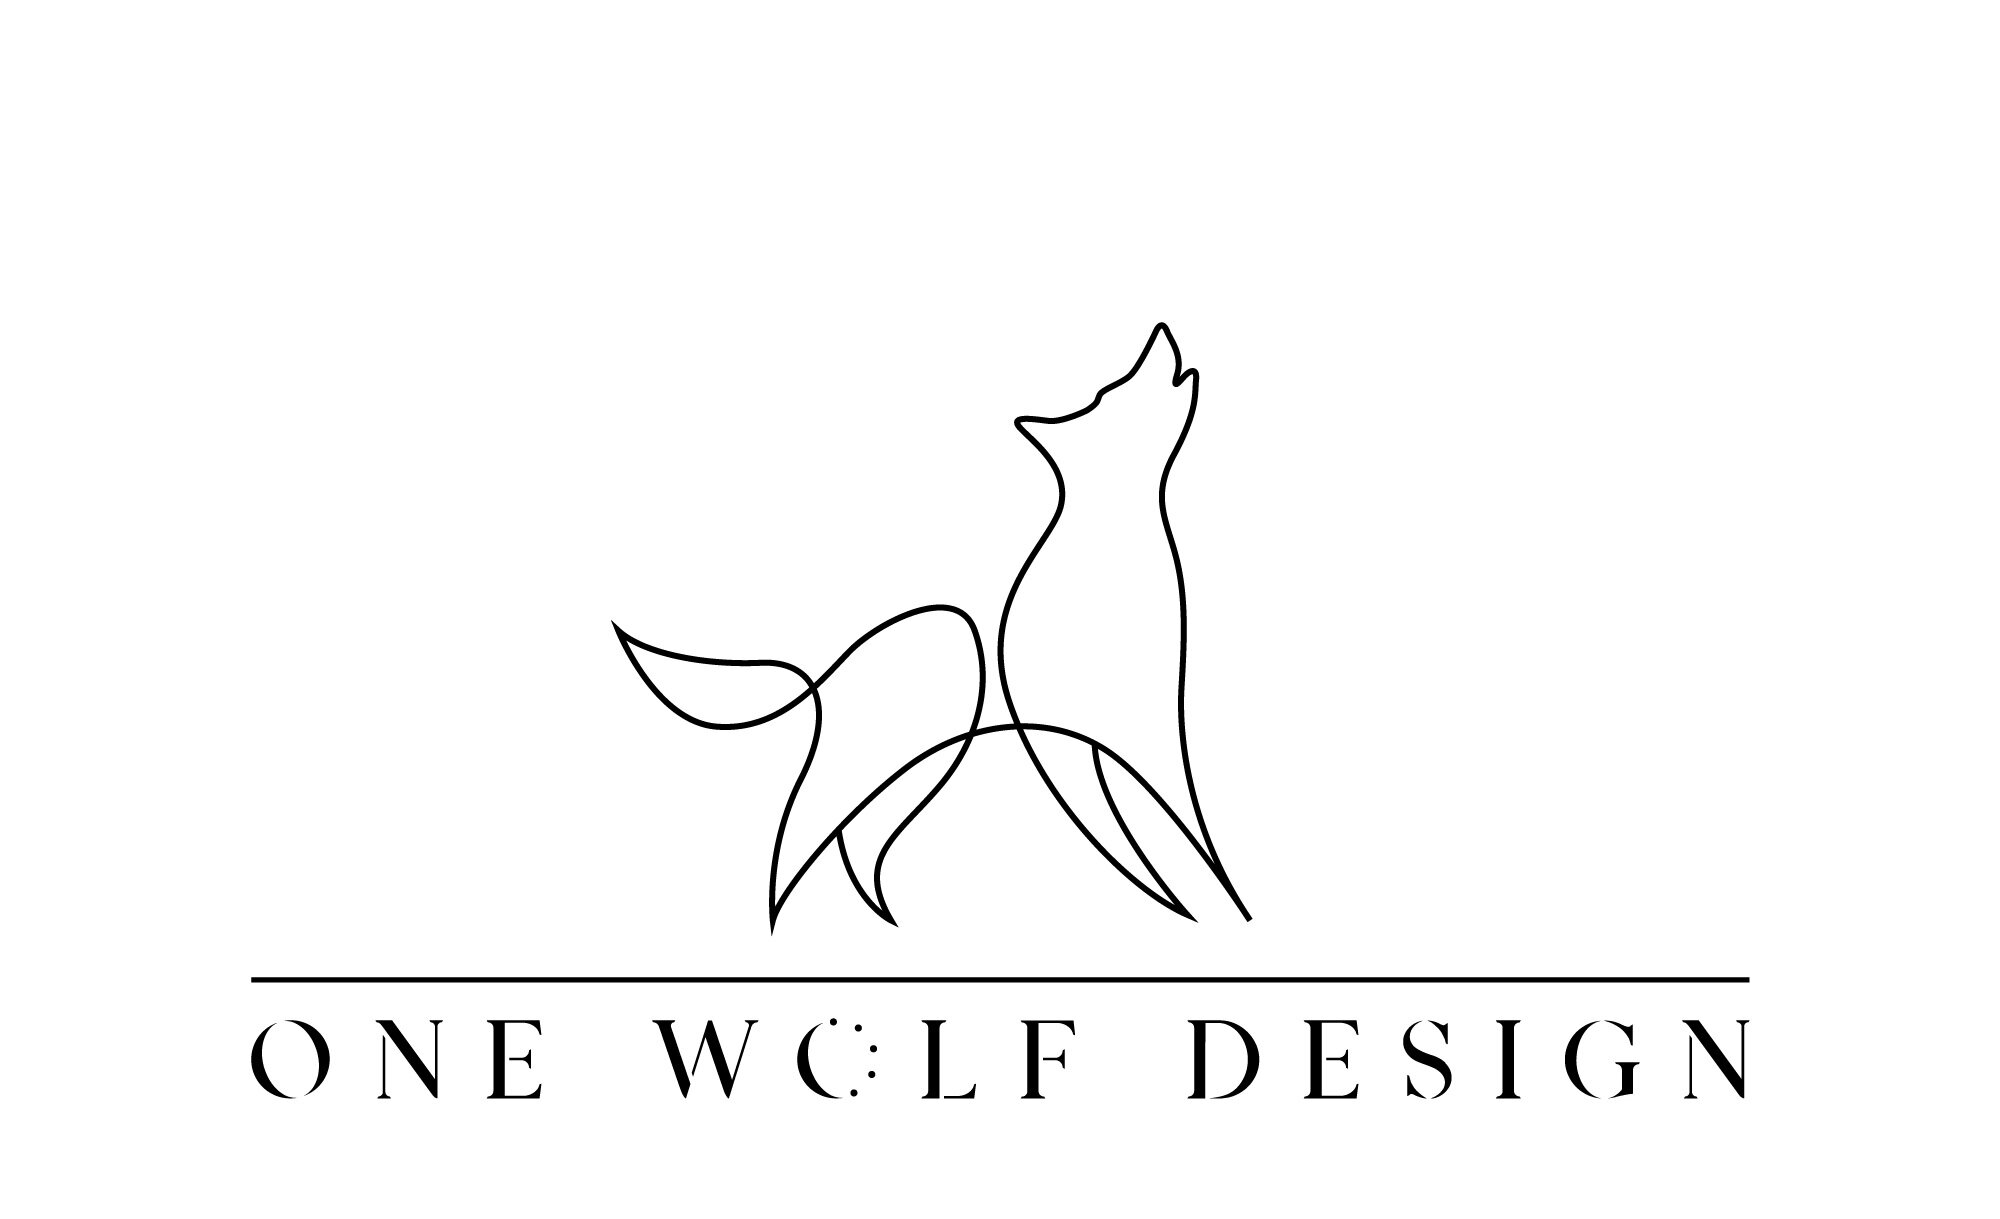 ONE WOLF DESIGN